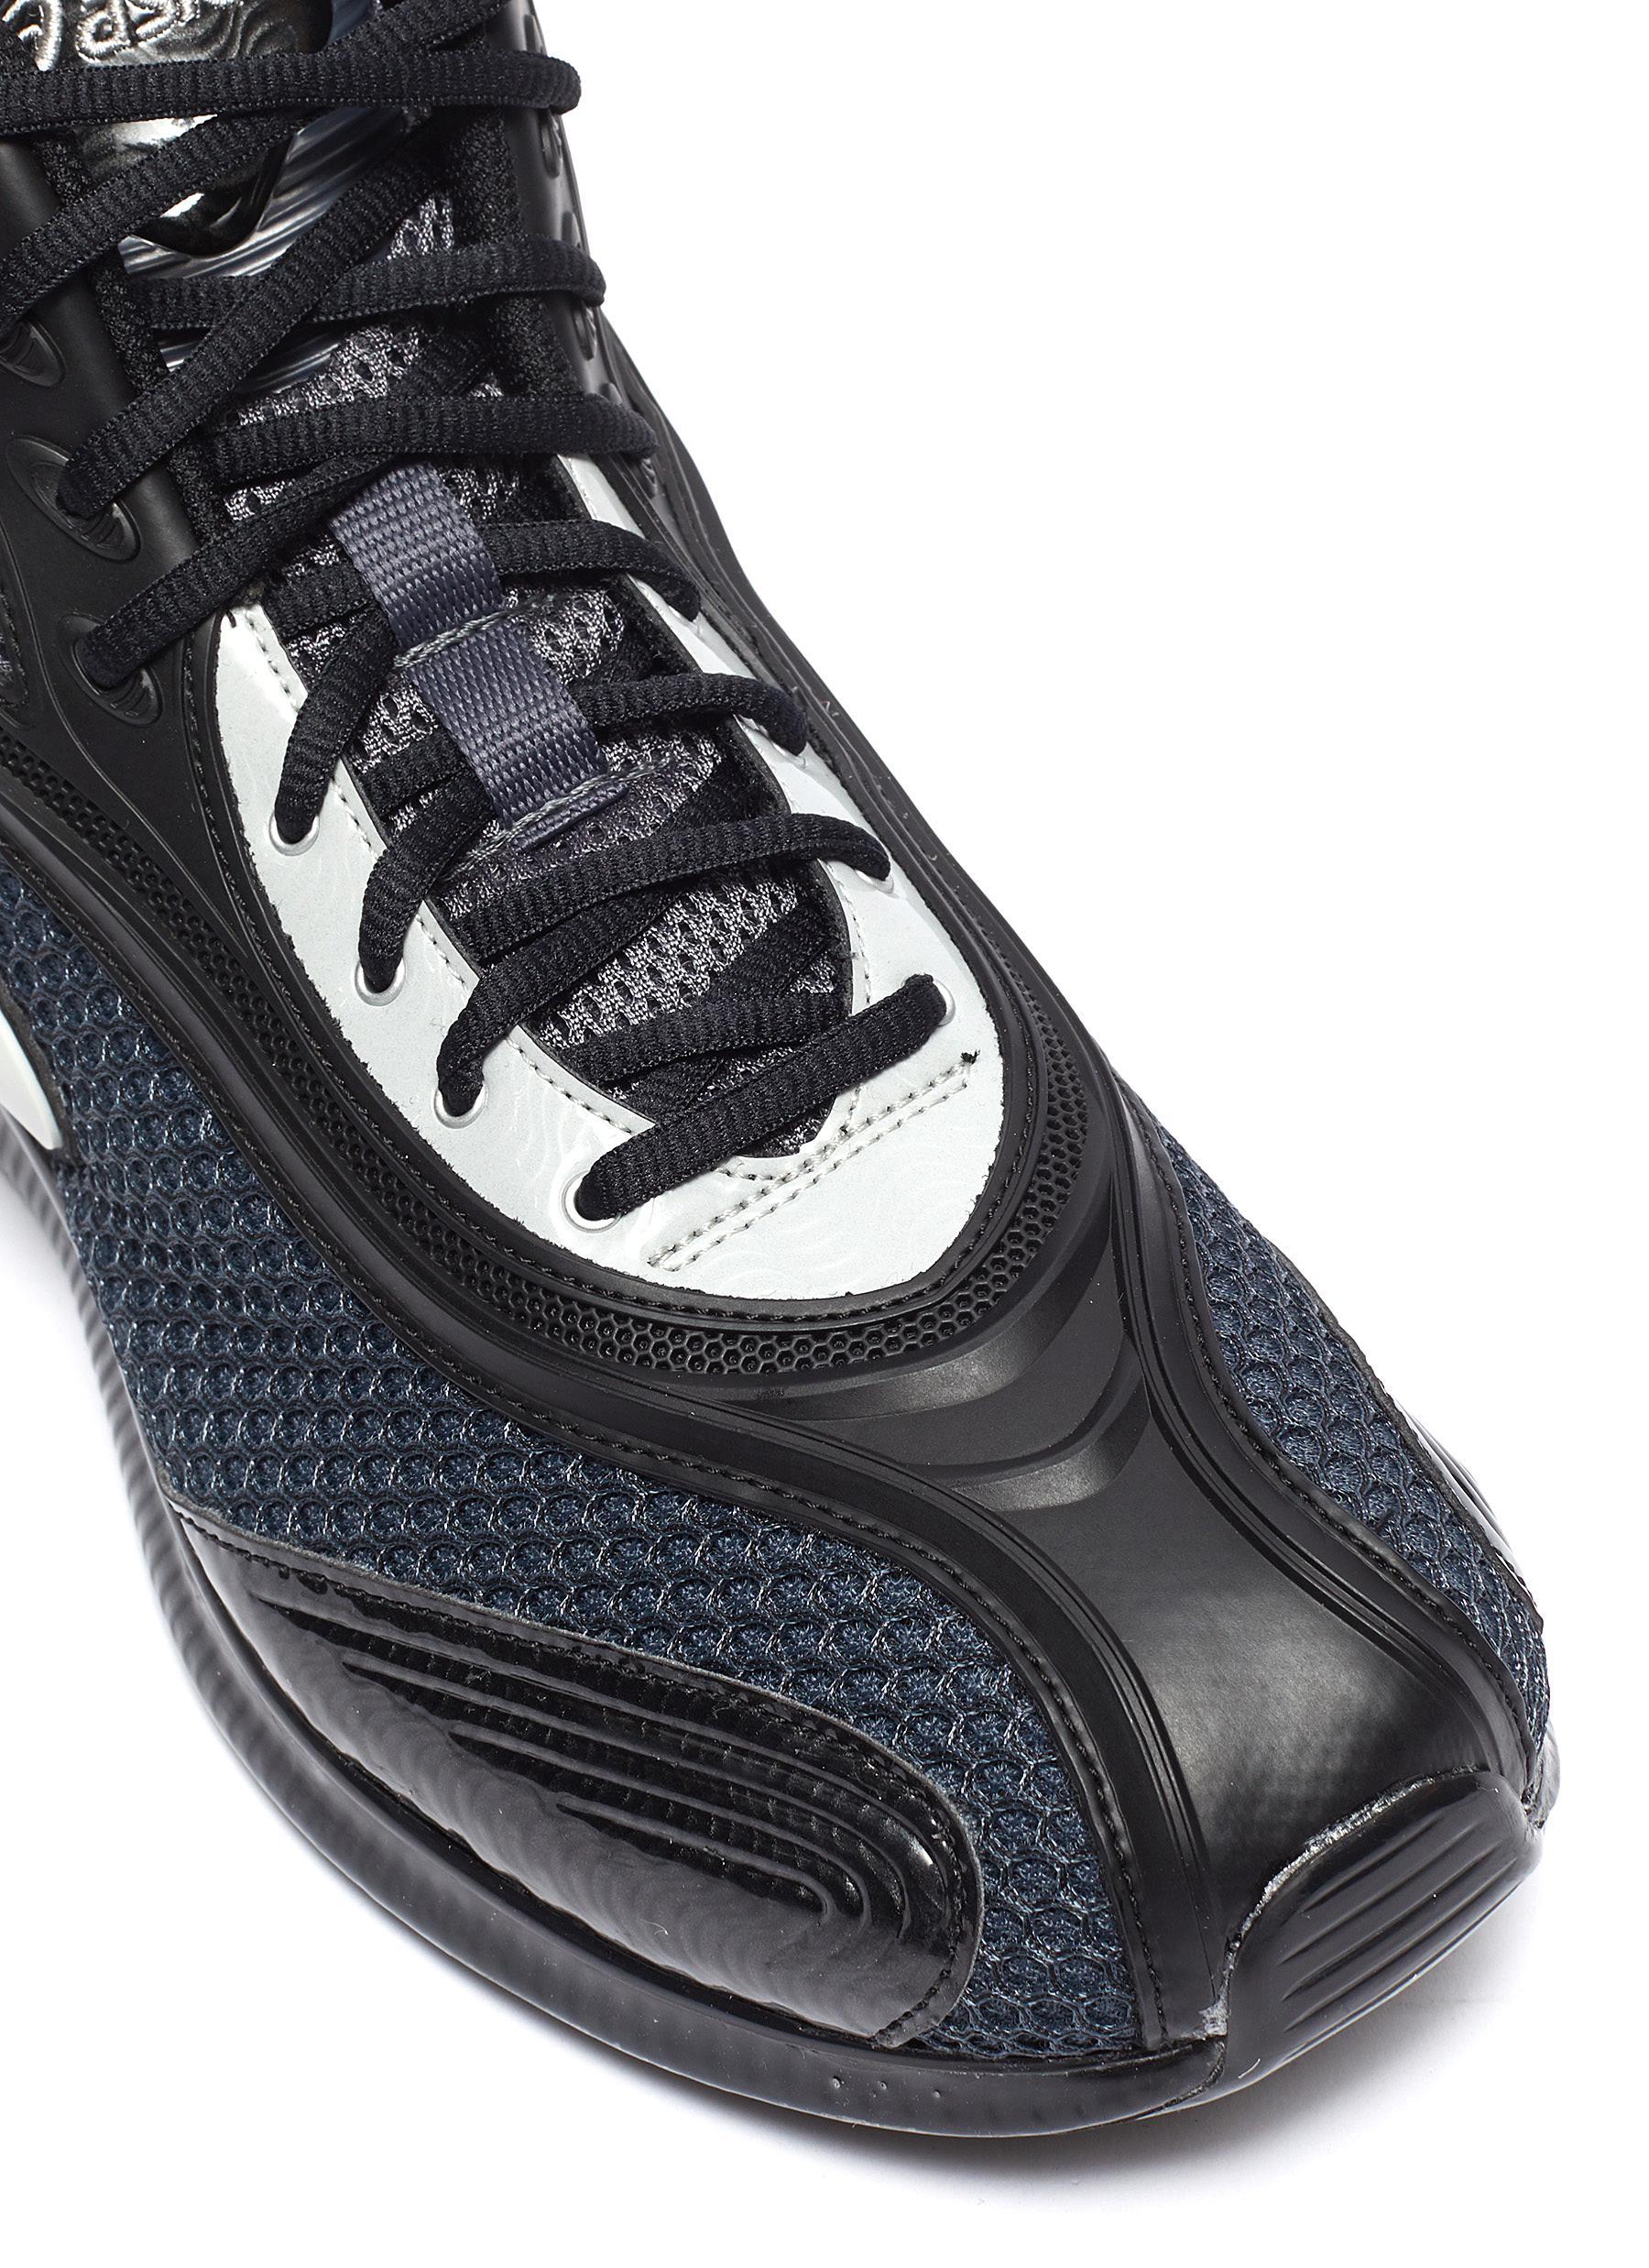 Kiko Kostadinov X Asics 'gel-sokat 2' Sneakers for Men |